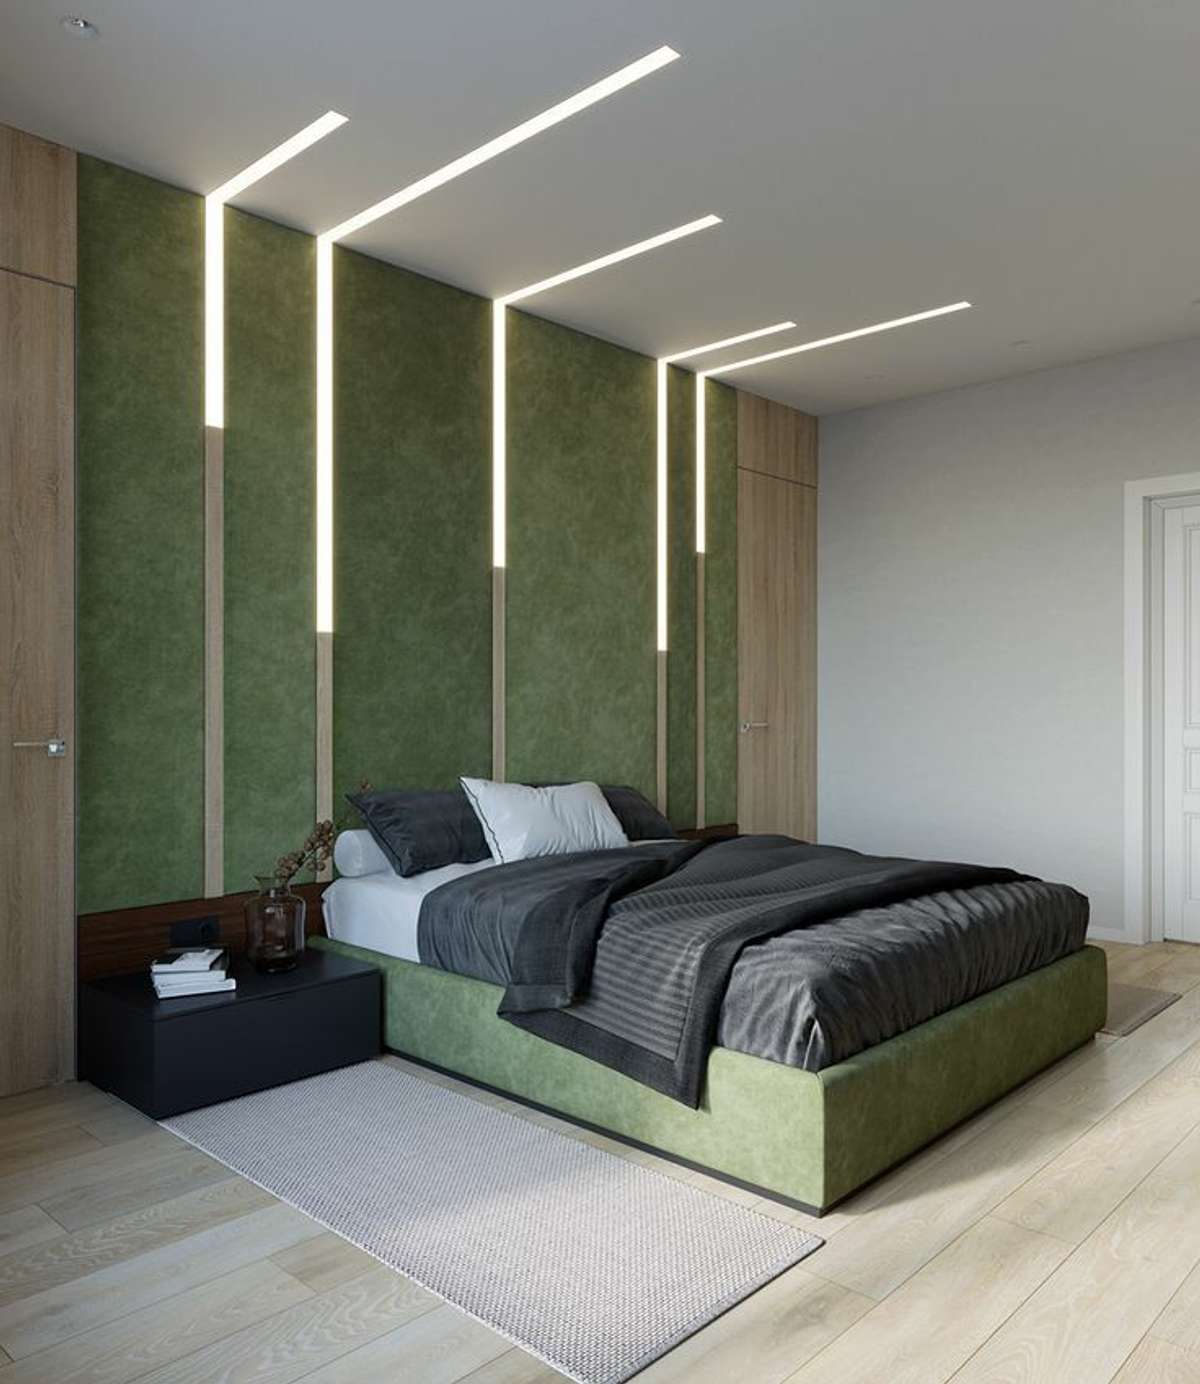 Furniture, Ceiling, Lighting, Storage, Bedroom Designs by Service Provider World of lights Ashraf, Ernakulam | Kolo